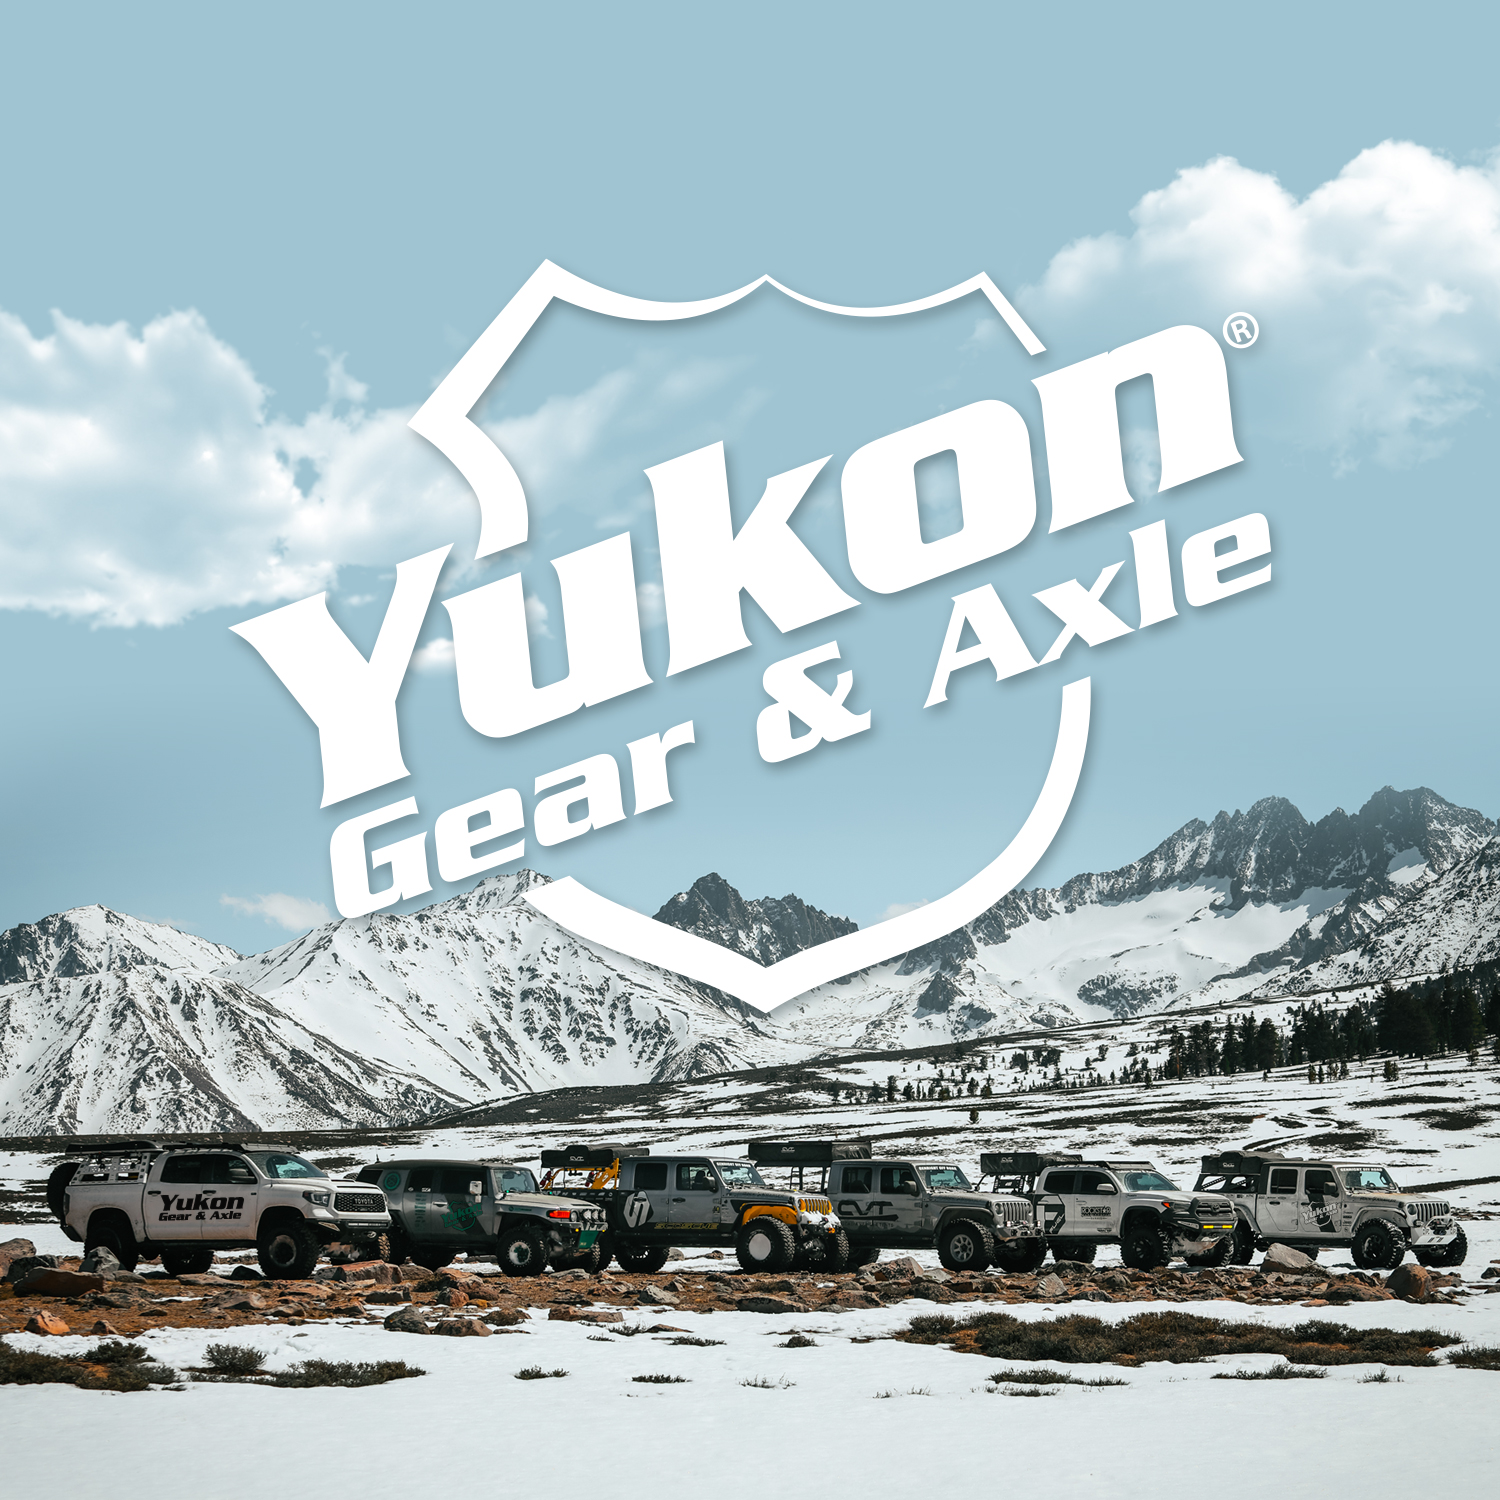 Yukon high performance Ring & Pinion set, Chrylser 8.75", 89 housing, 3.55 